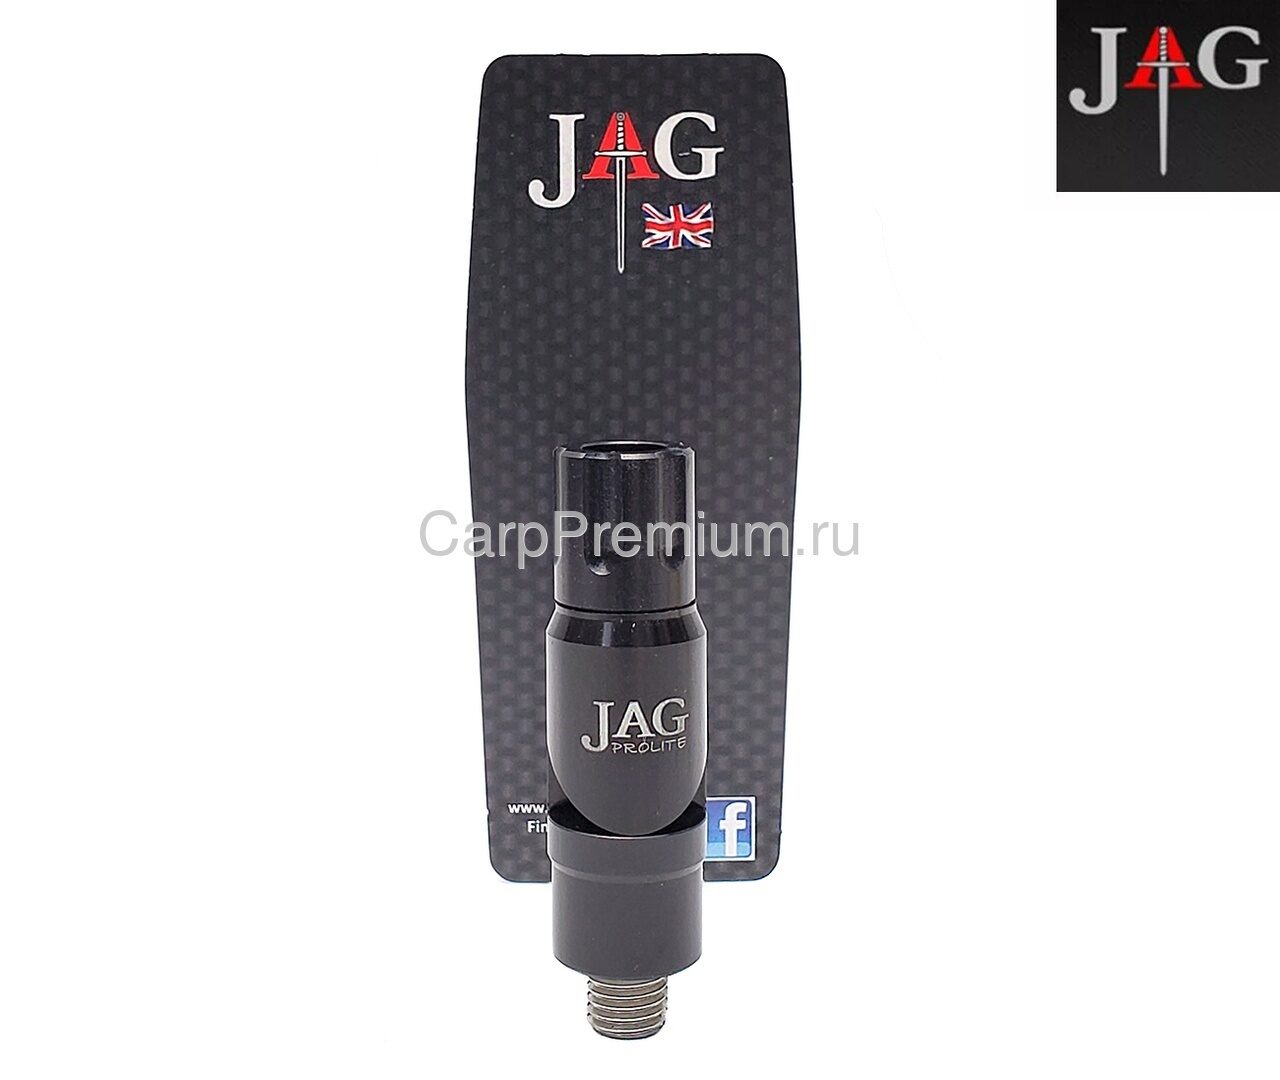 Адаптер для изменения угла наклона Черный JAG (Джаг) - Prolite Black High Tipper MK2